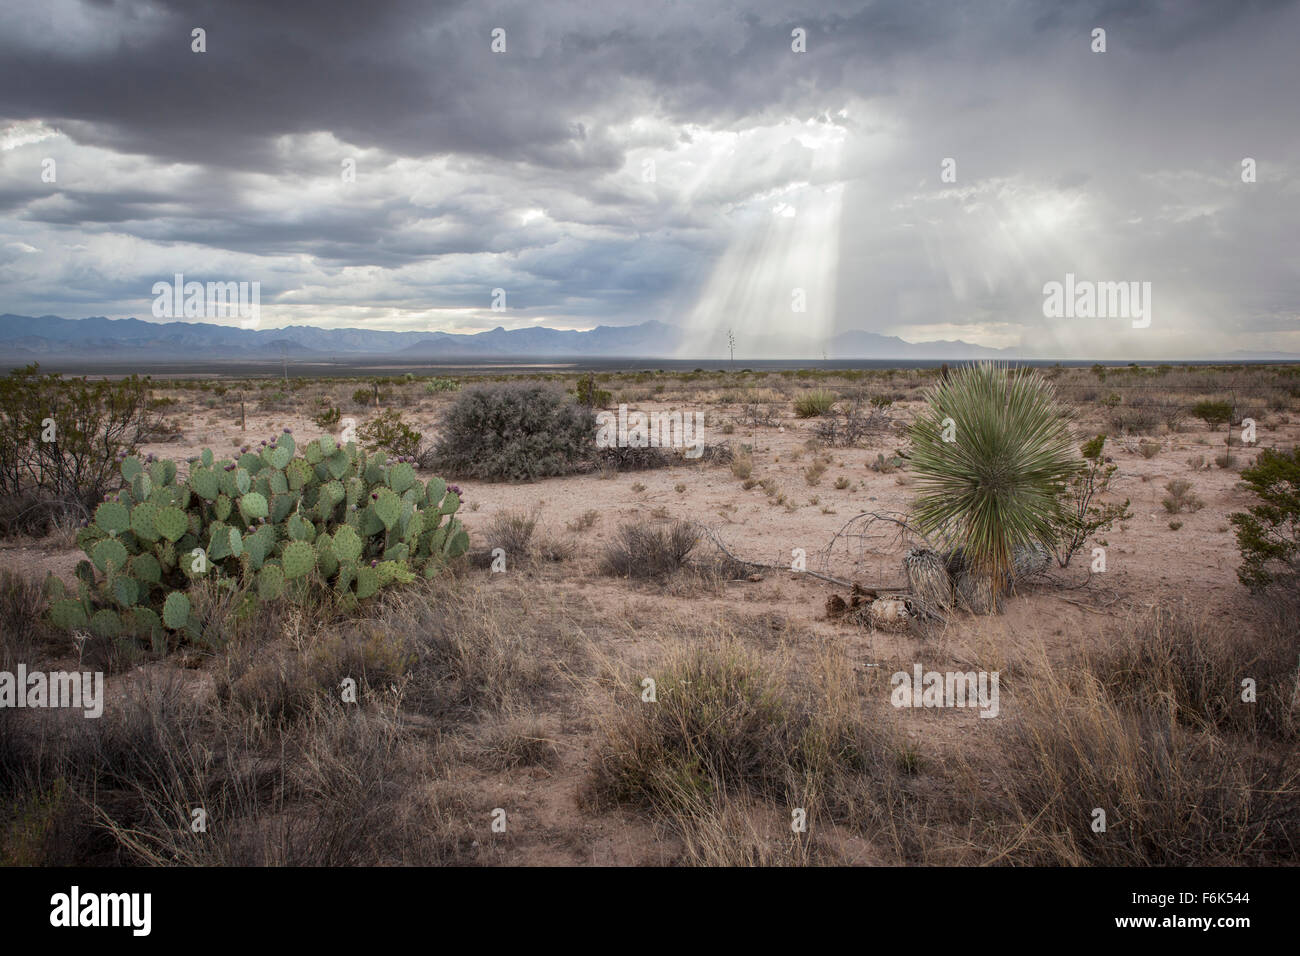 CREPUSCULAR Rays piercing durch die Wolken von einer eingehenden Sturm in der Wüste New Mexicos. Stockfoto